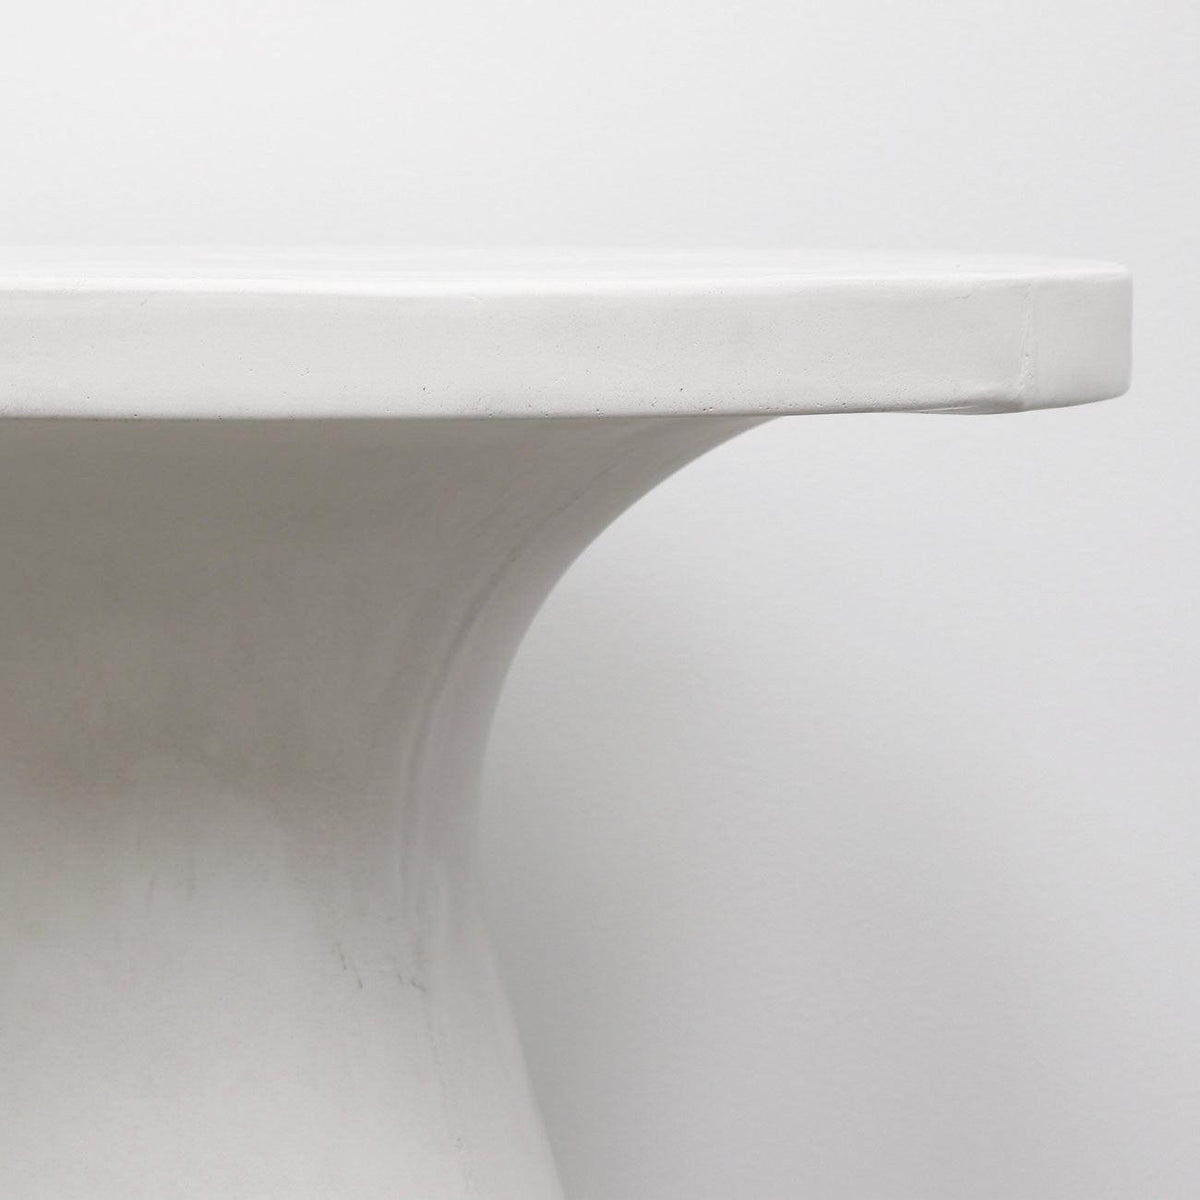 Corfu Concrete Pedestal Table - White - Humble & Grand Homestore